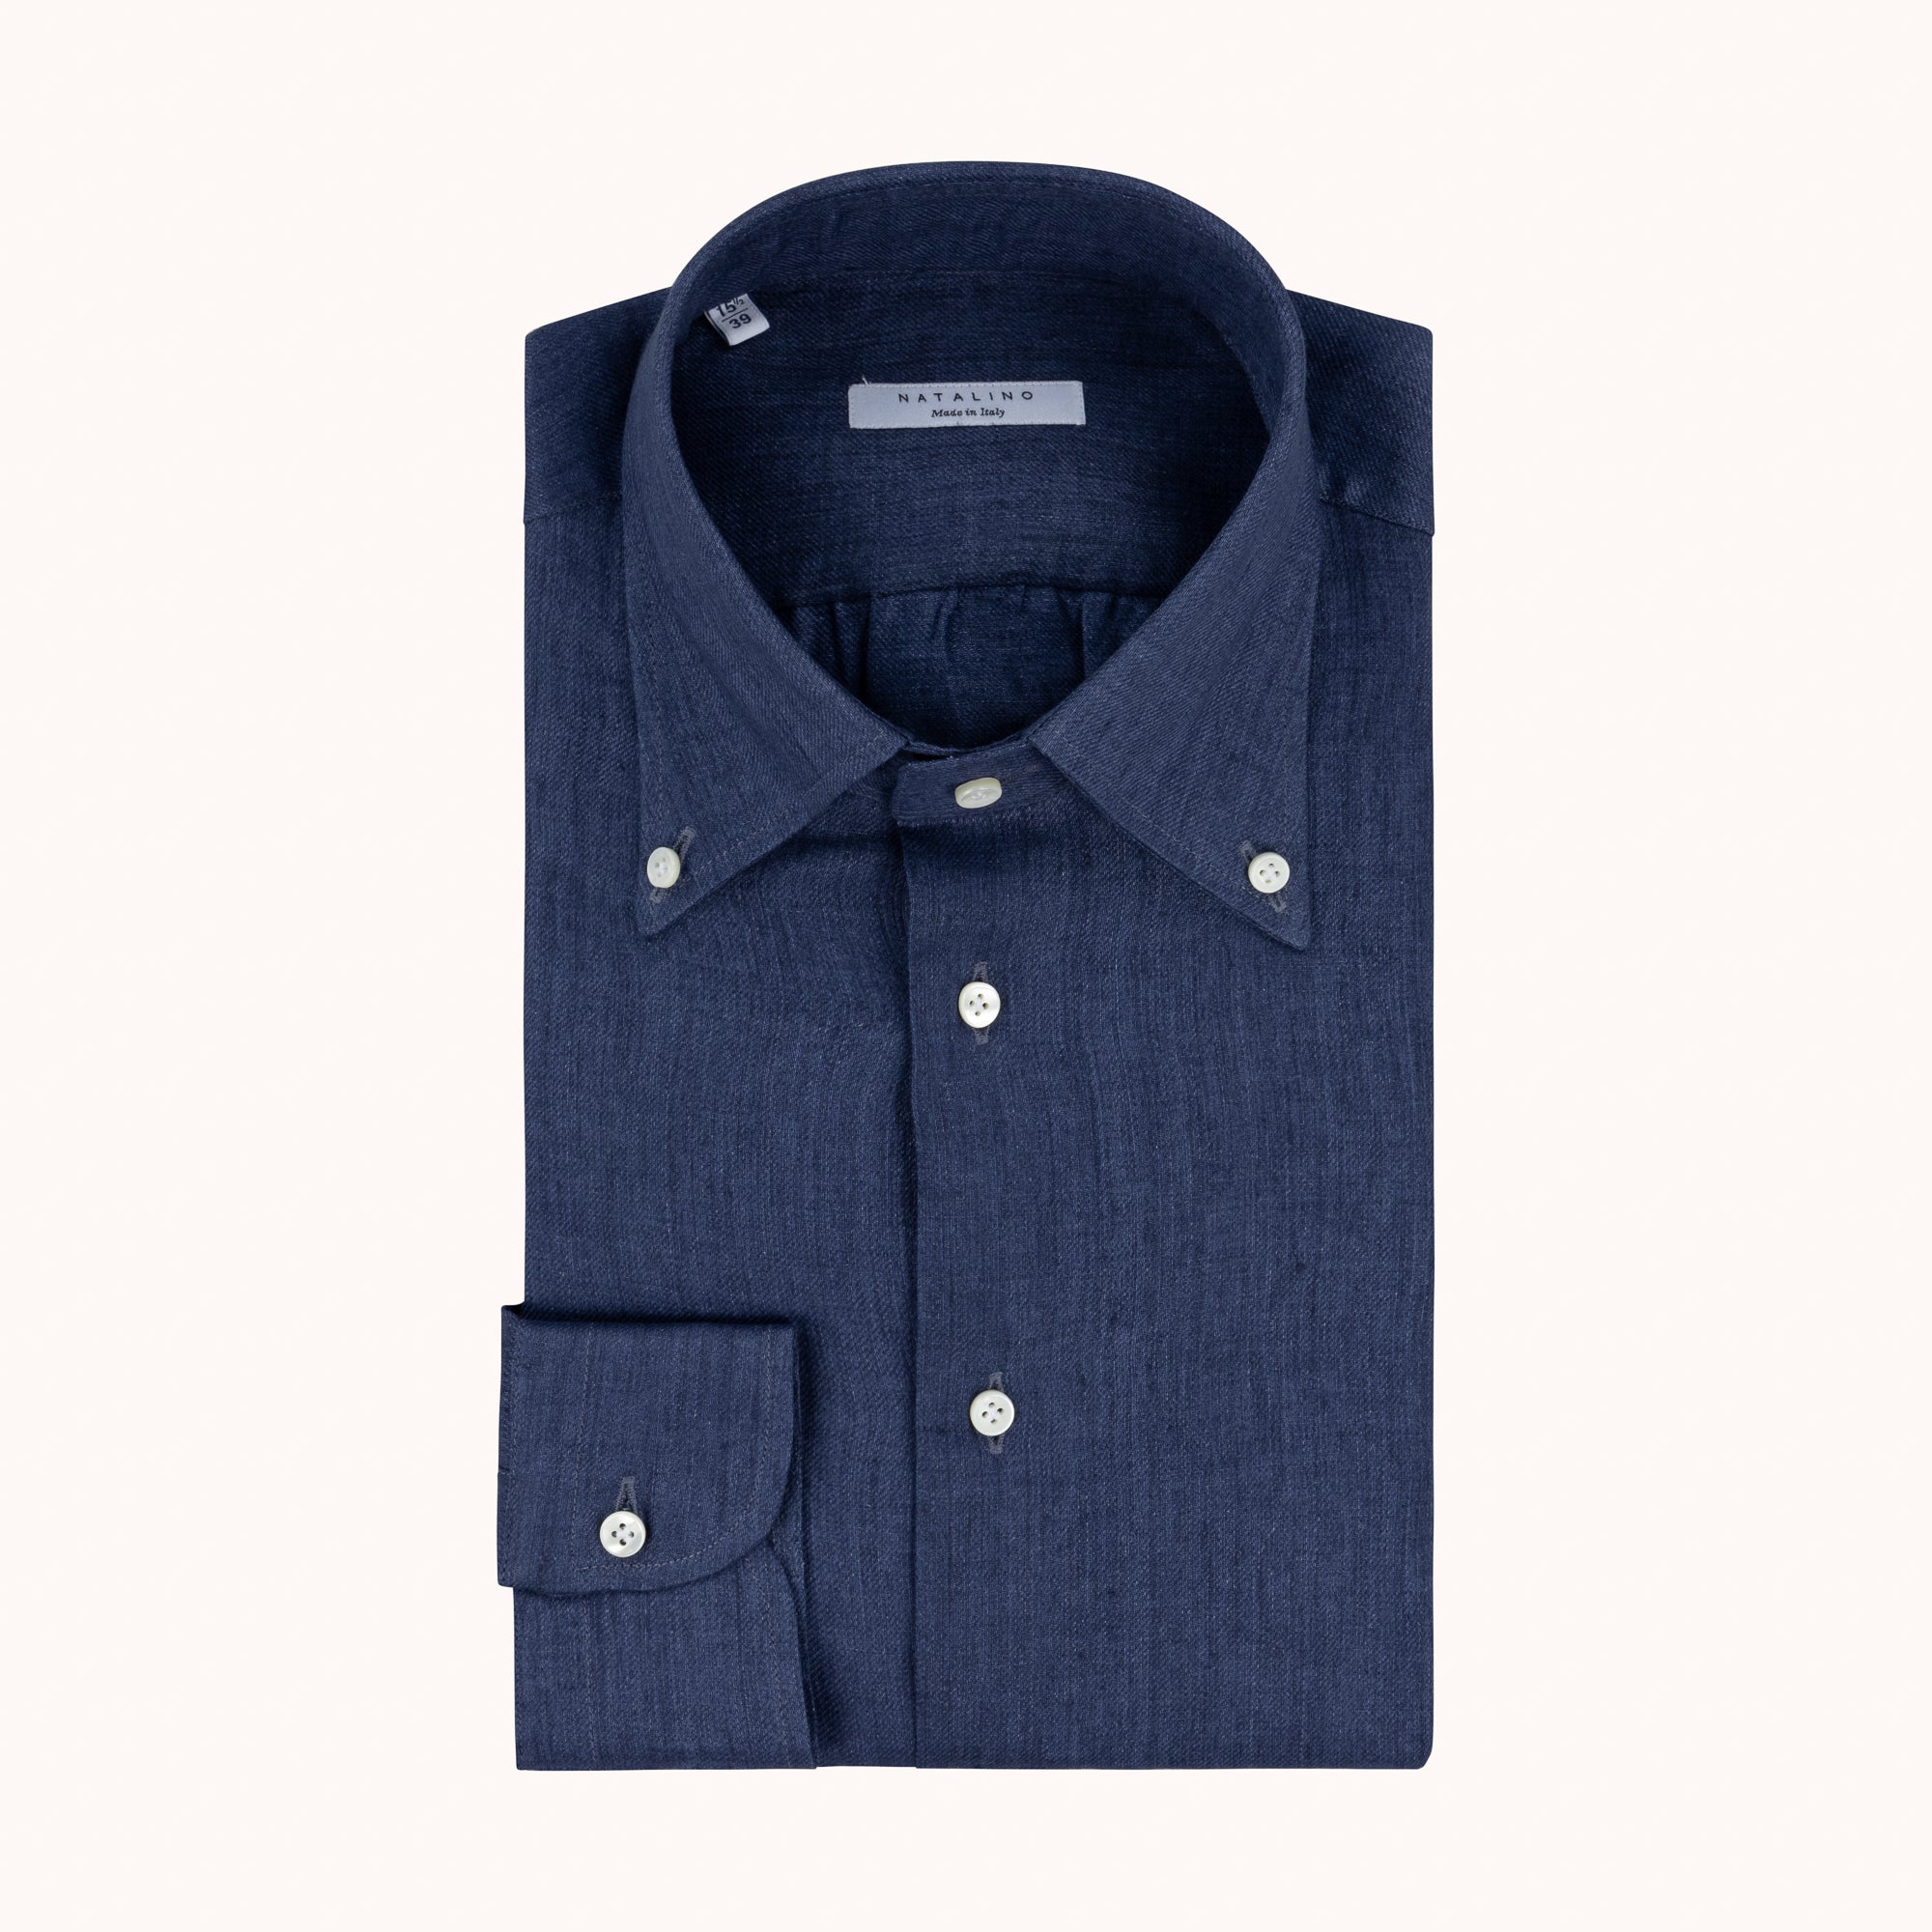 navy blue button down shirt